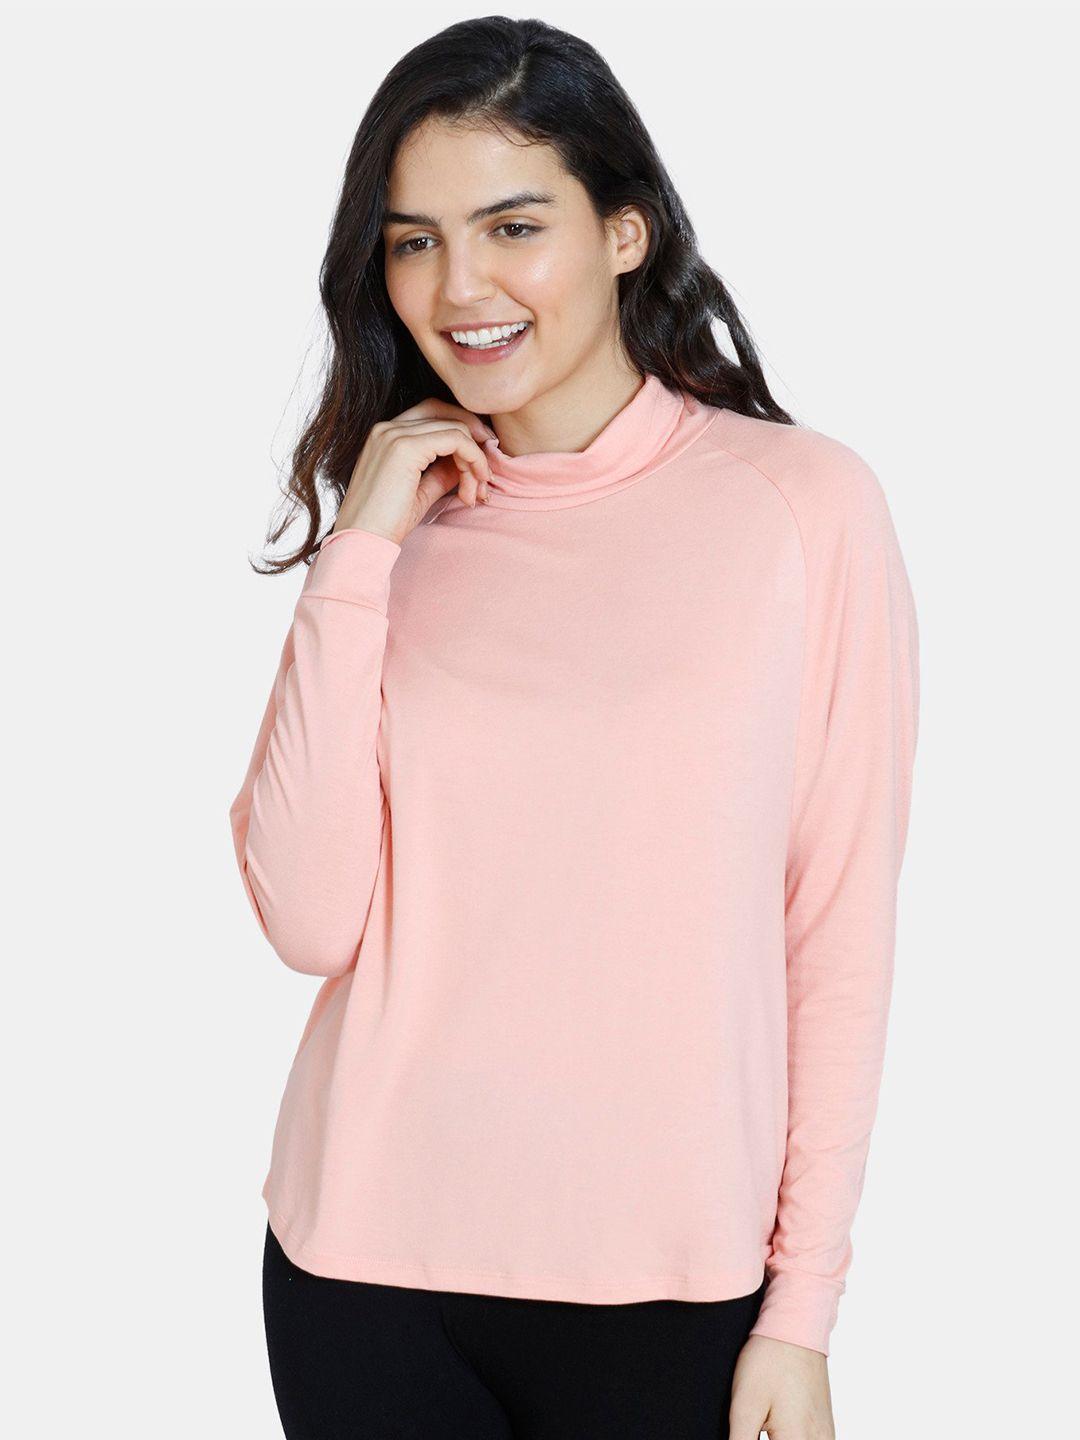 zivame women pink sweatshirt